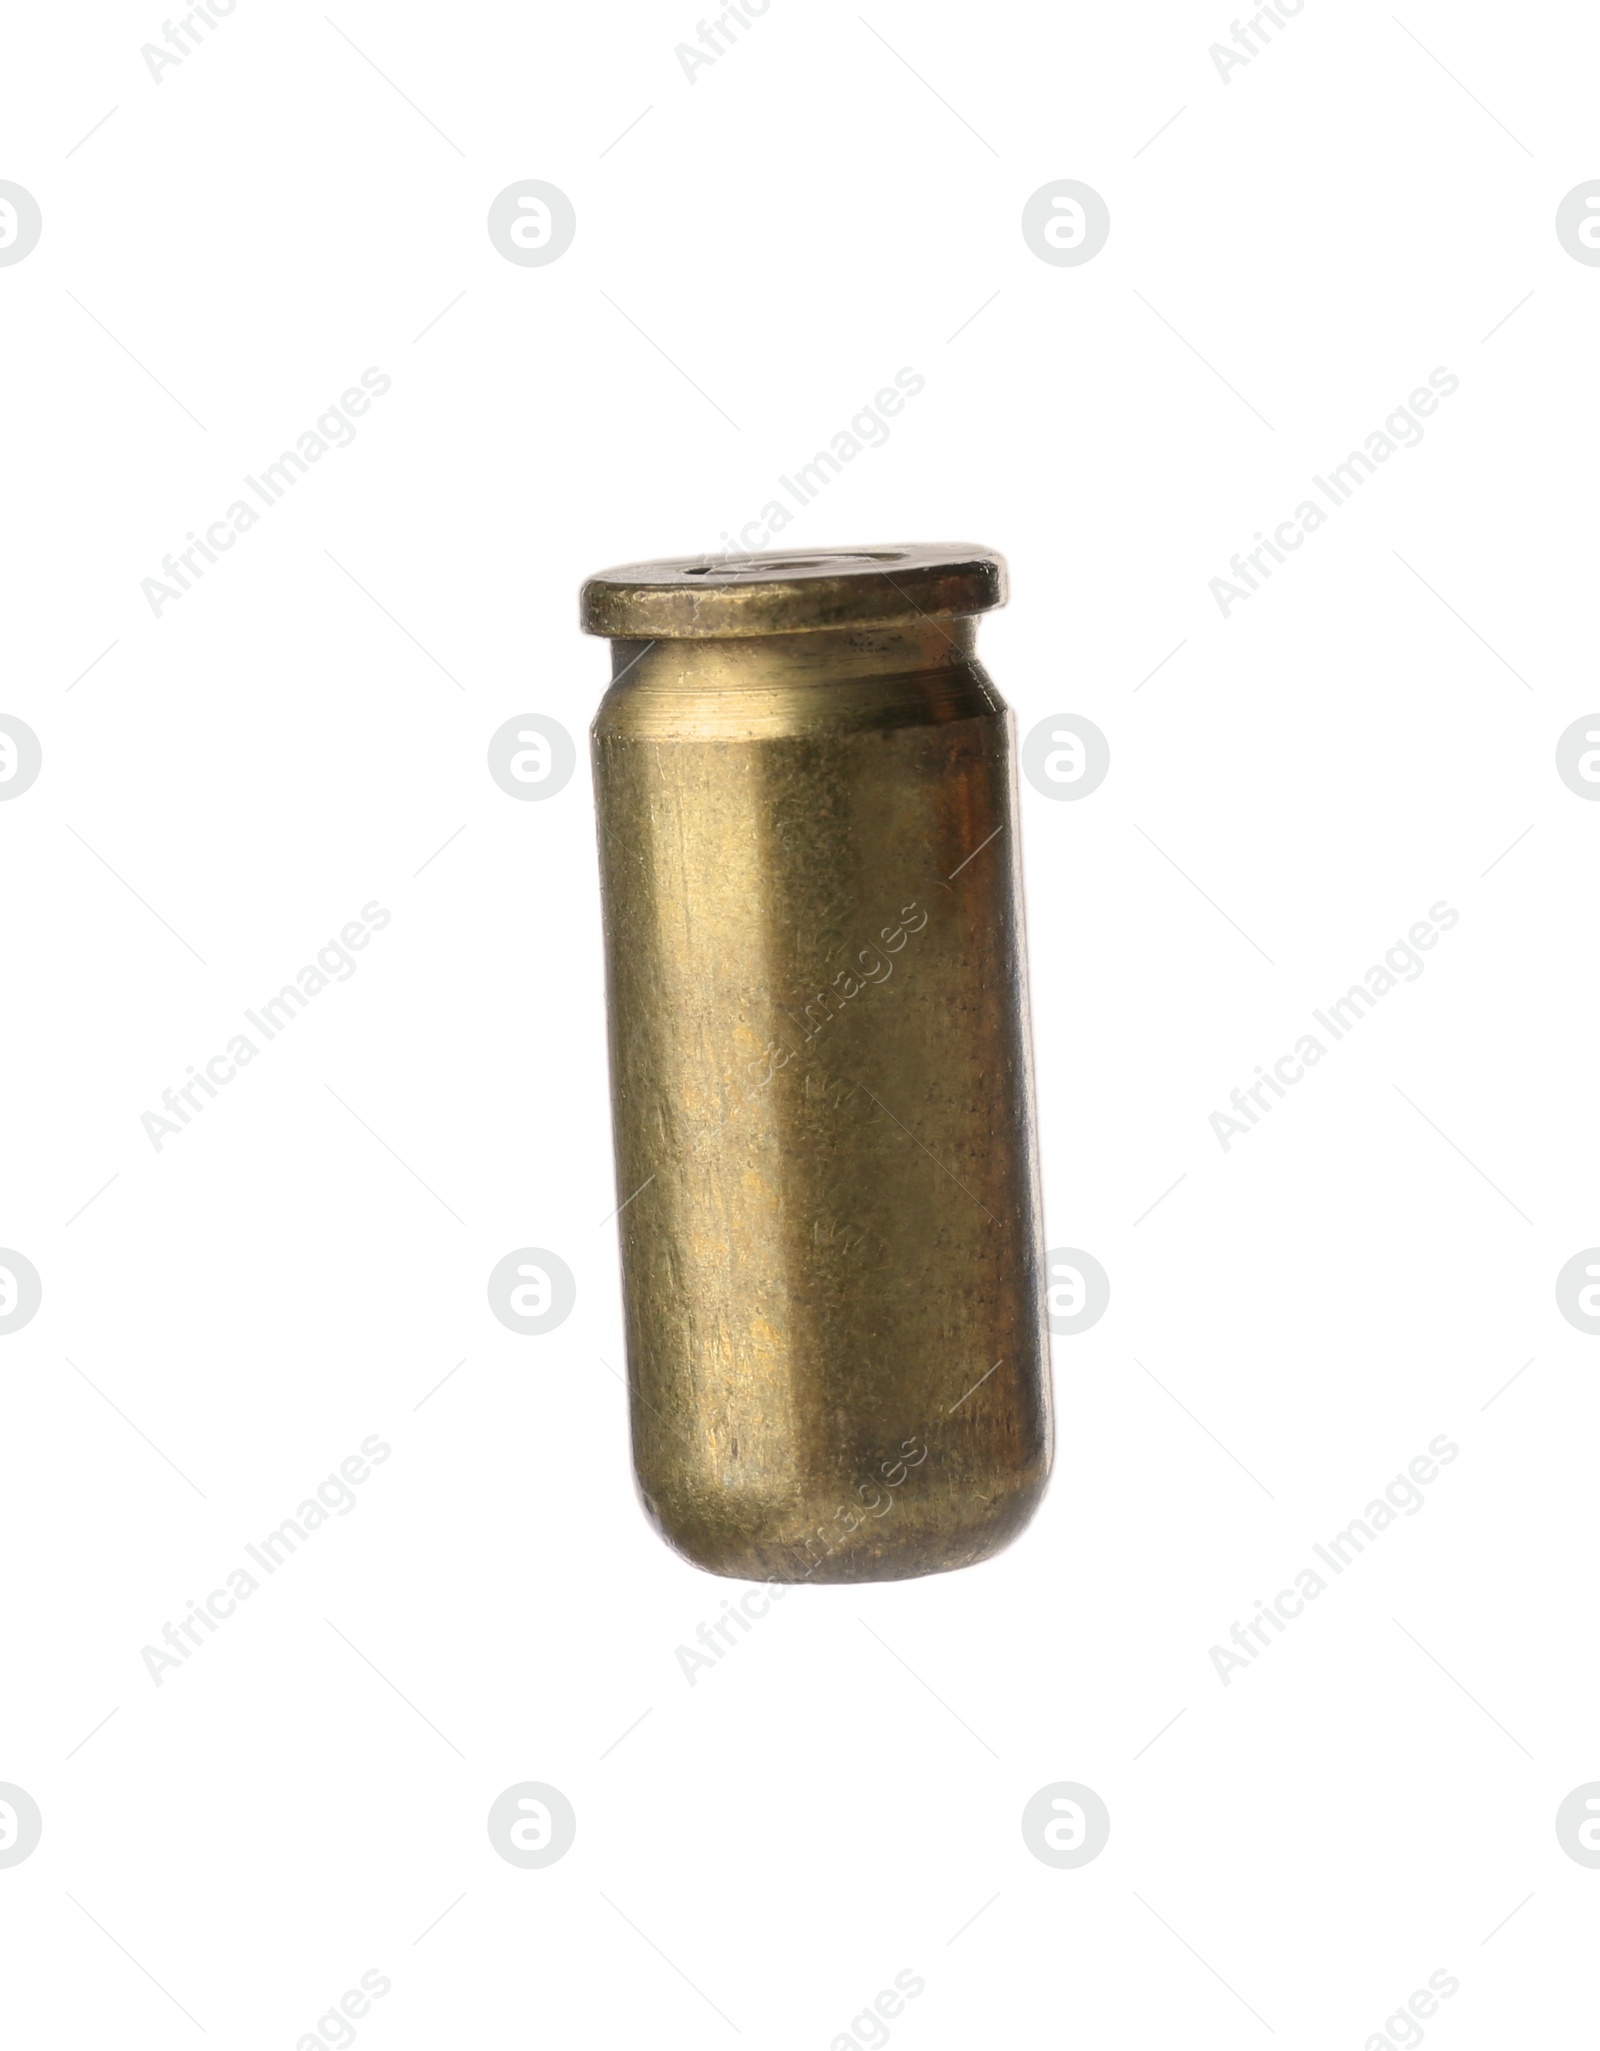 Photo of Cartridge case isolated on white. Firearm ammunition